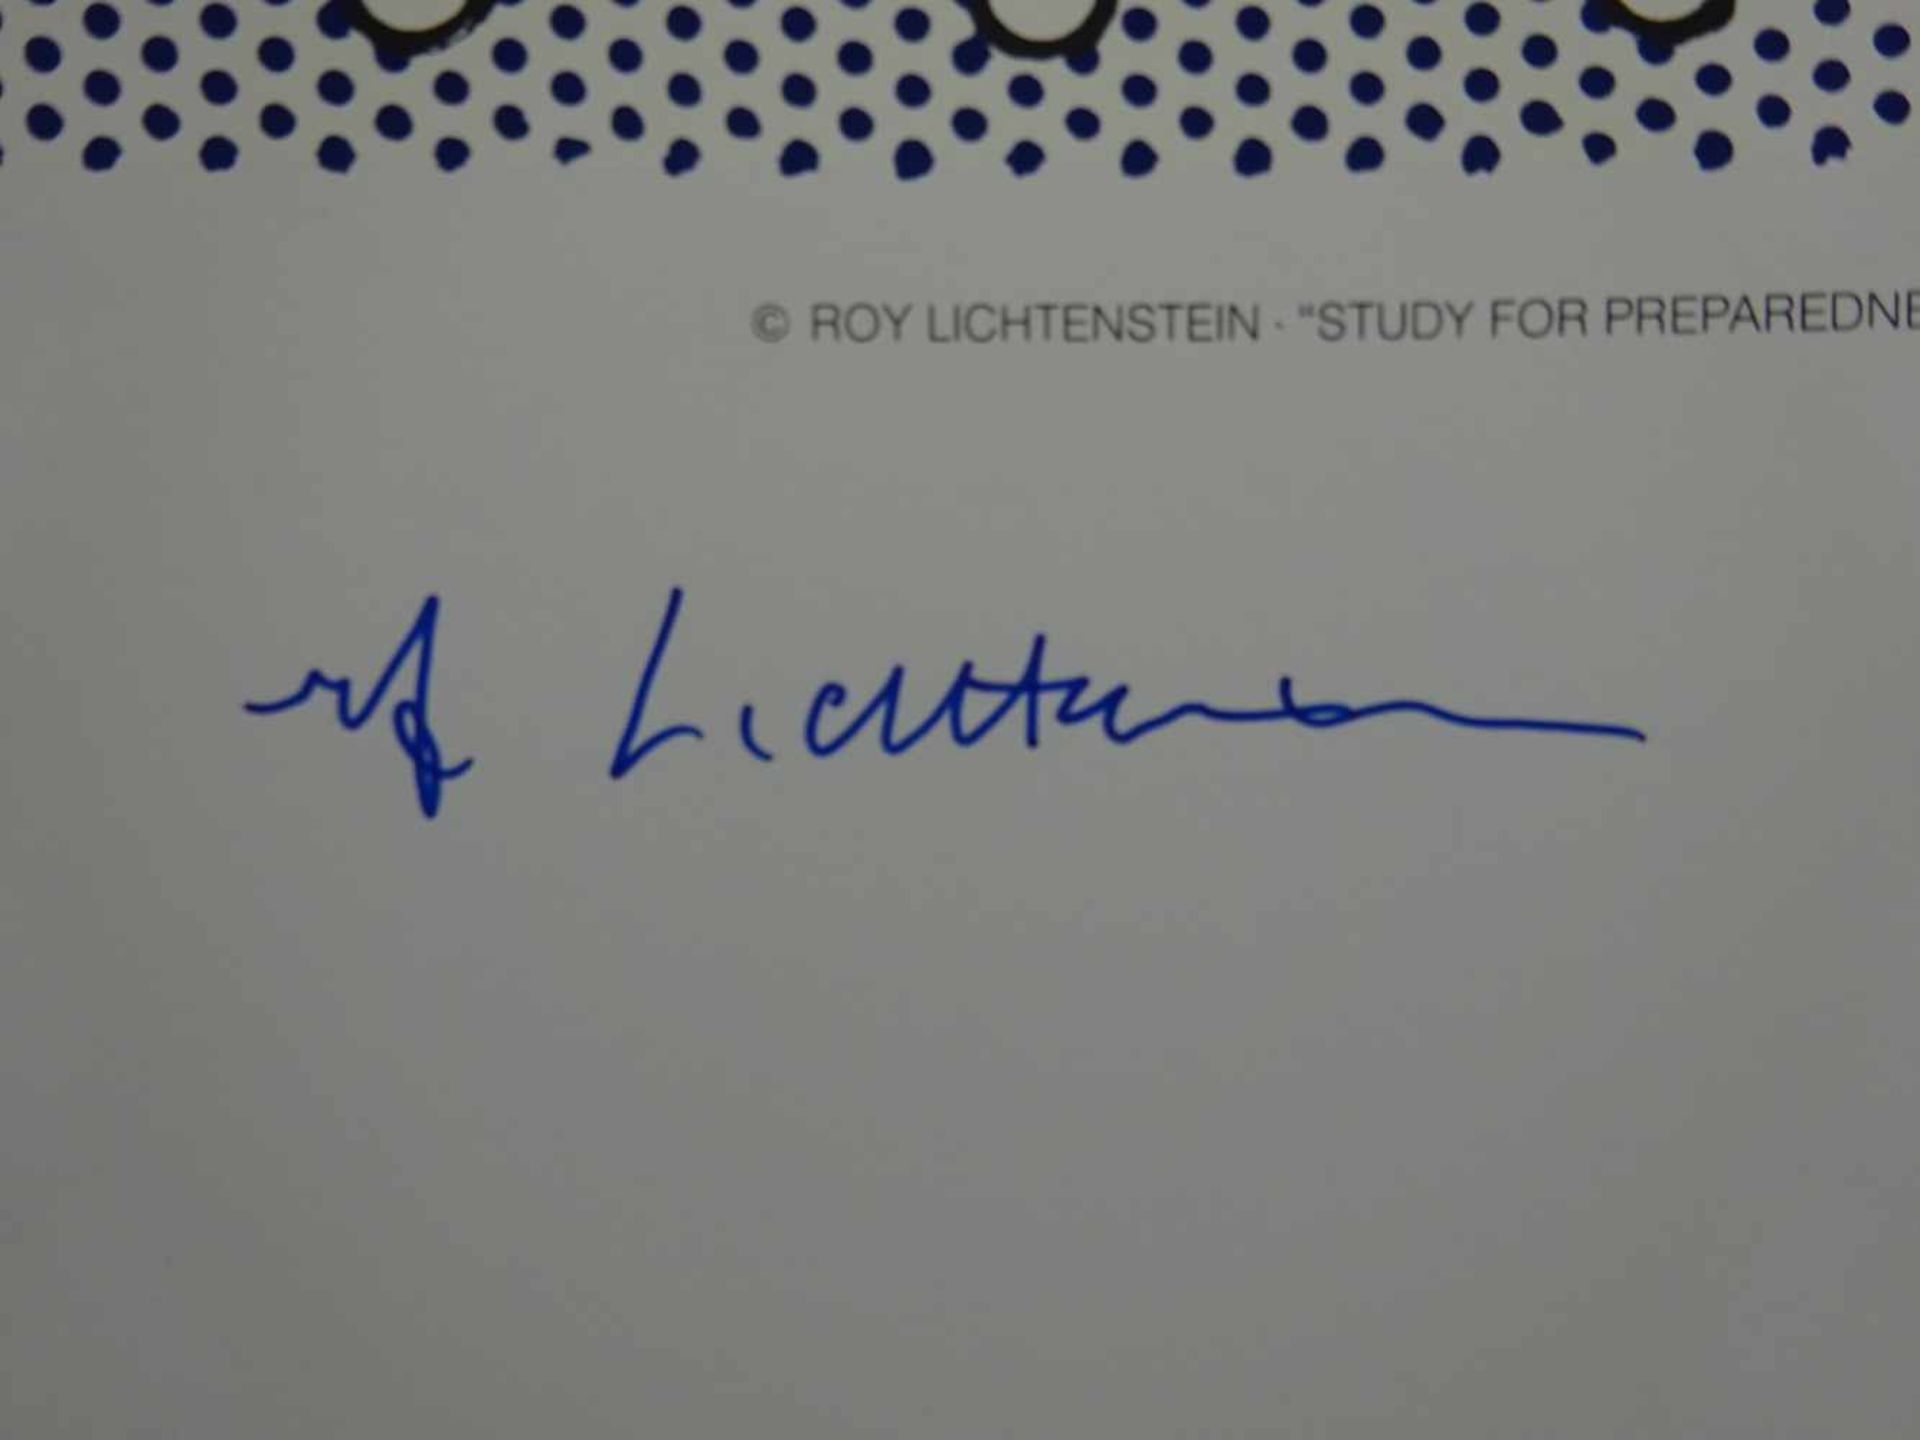 Lichtenstein, Roy(Manhattan 1923 - 1997). Study for Preparedness. Farbige Offsetlithographie. - Bild 3 aus 4